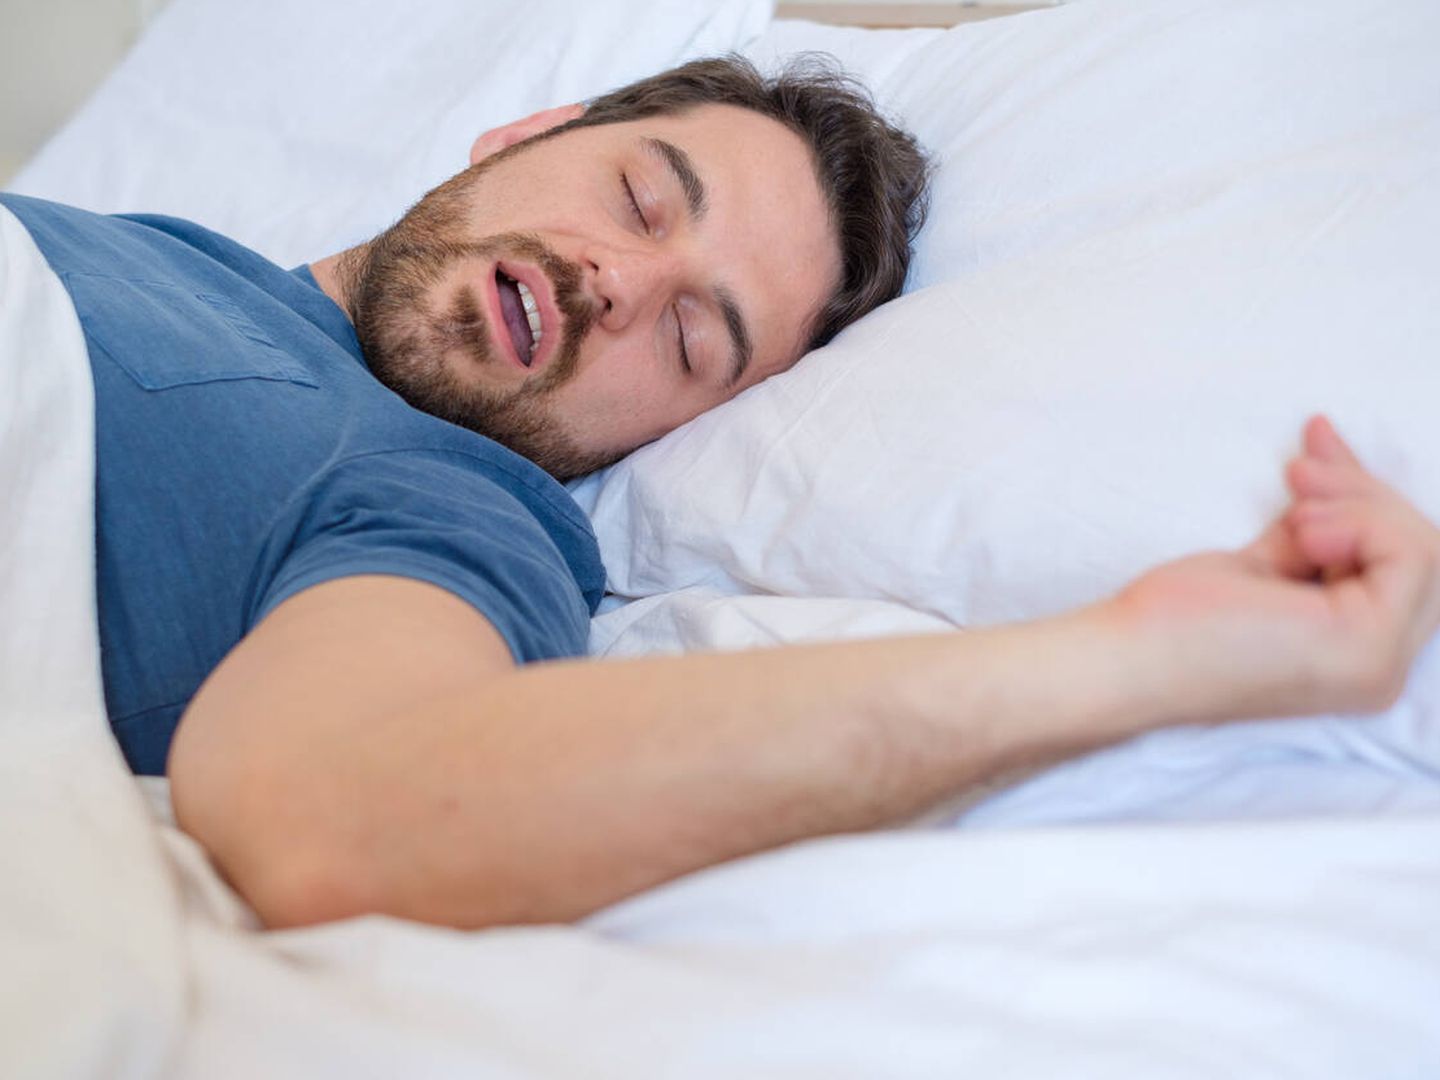 Los ronquidos son uno de los síntomas más leves de la apnea del sueño. (iStock)